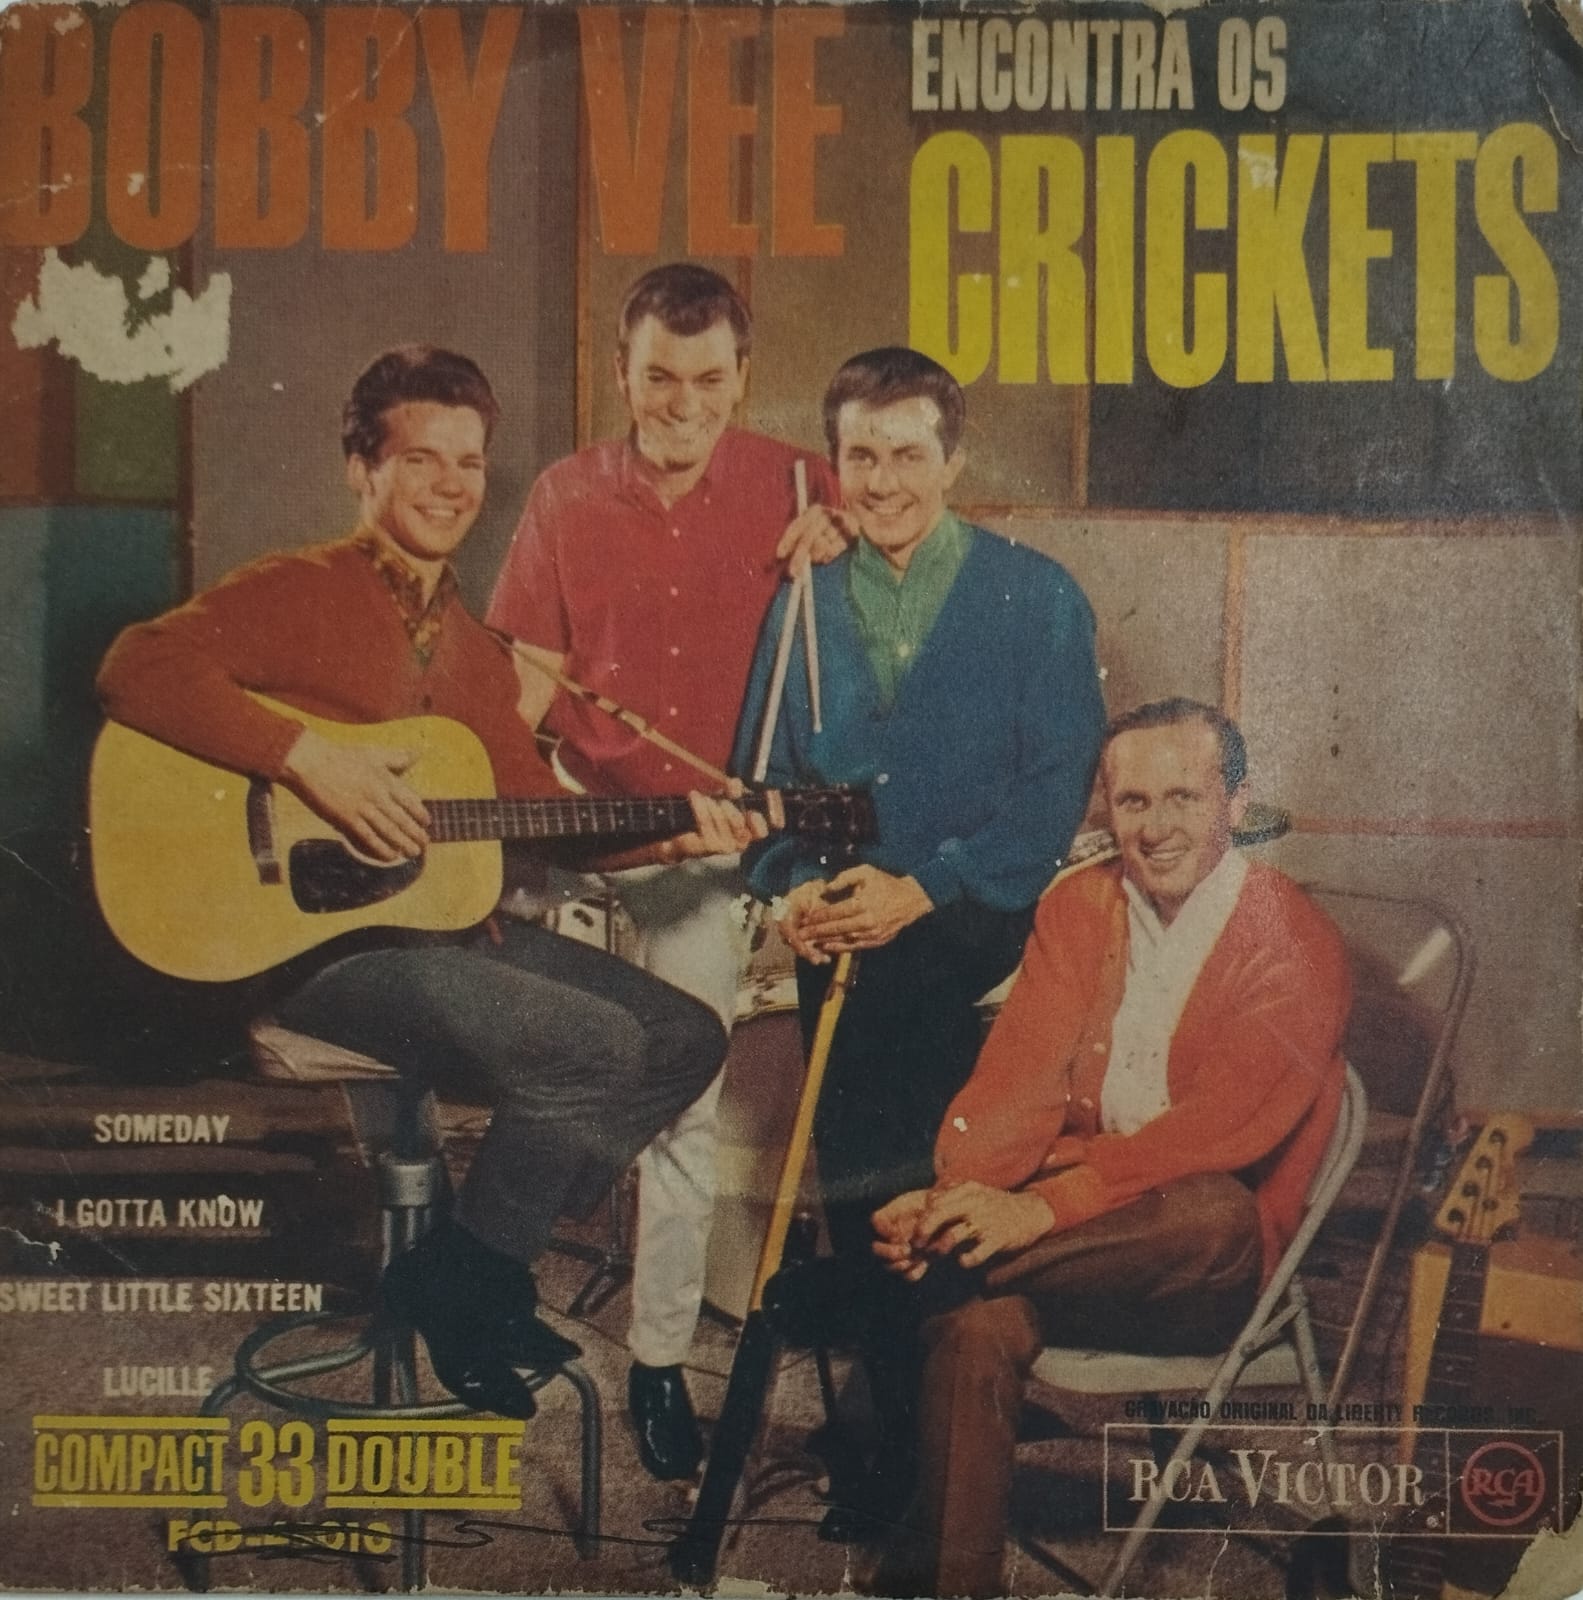 Bobby Vee and The Crickets - Bobby Vee Encontra Os Crickets (Compacto)